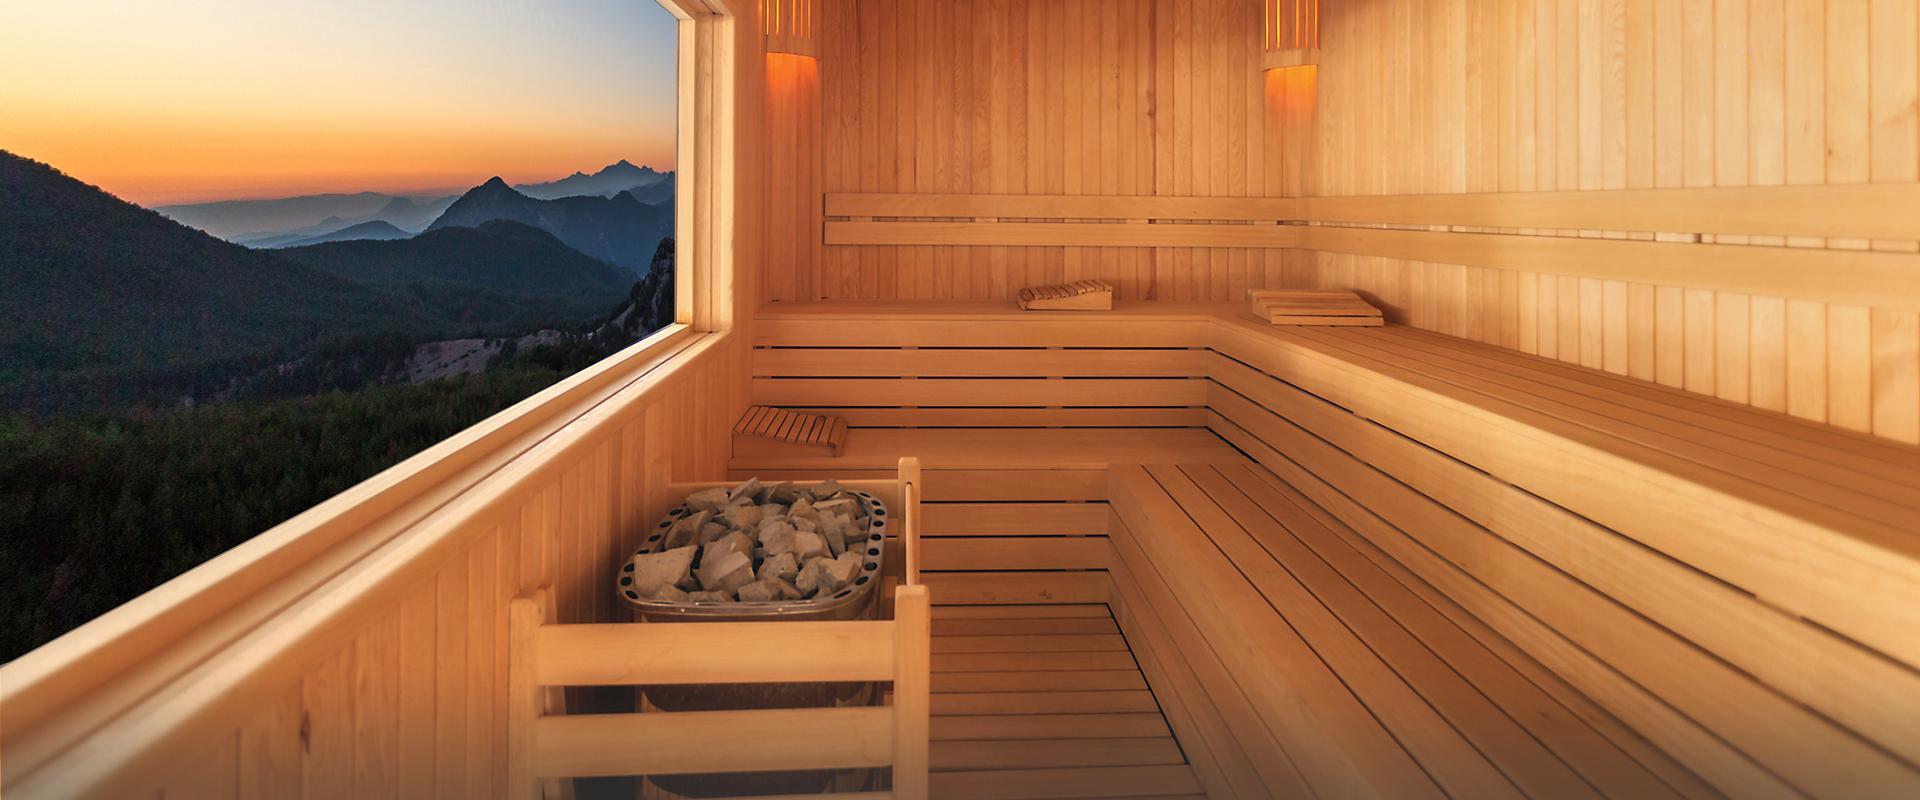 sauna - Slajd #1